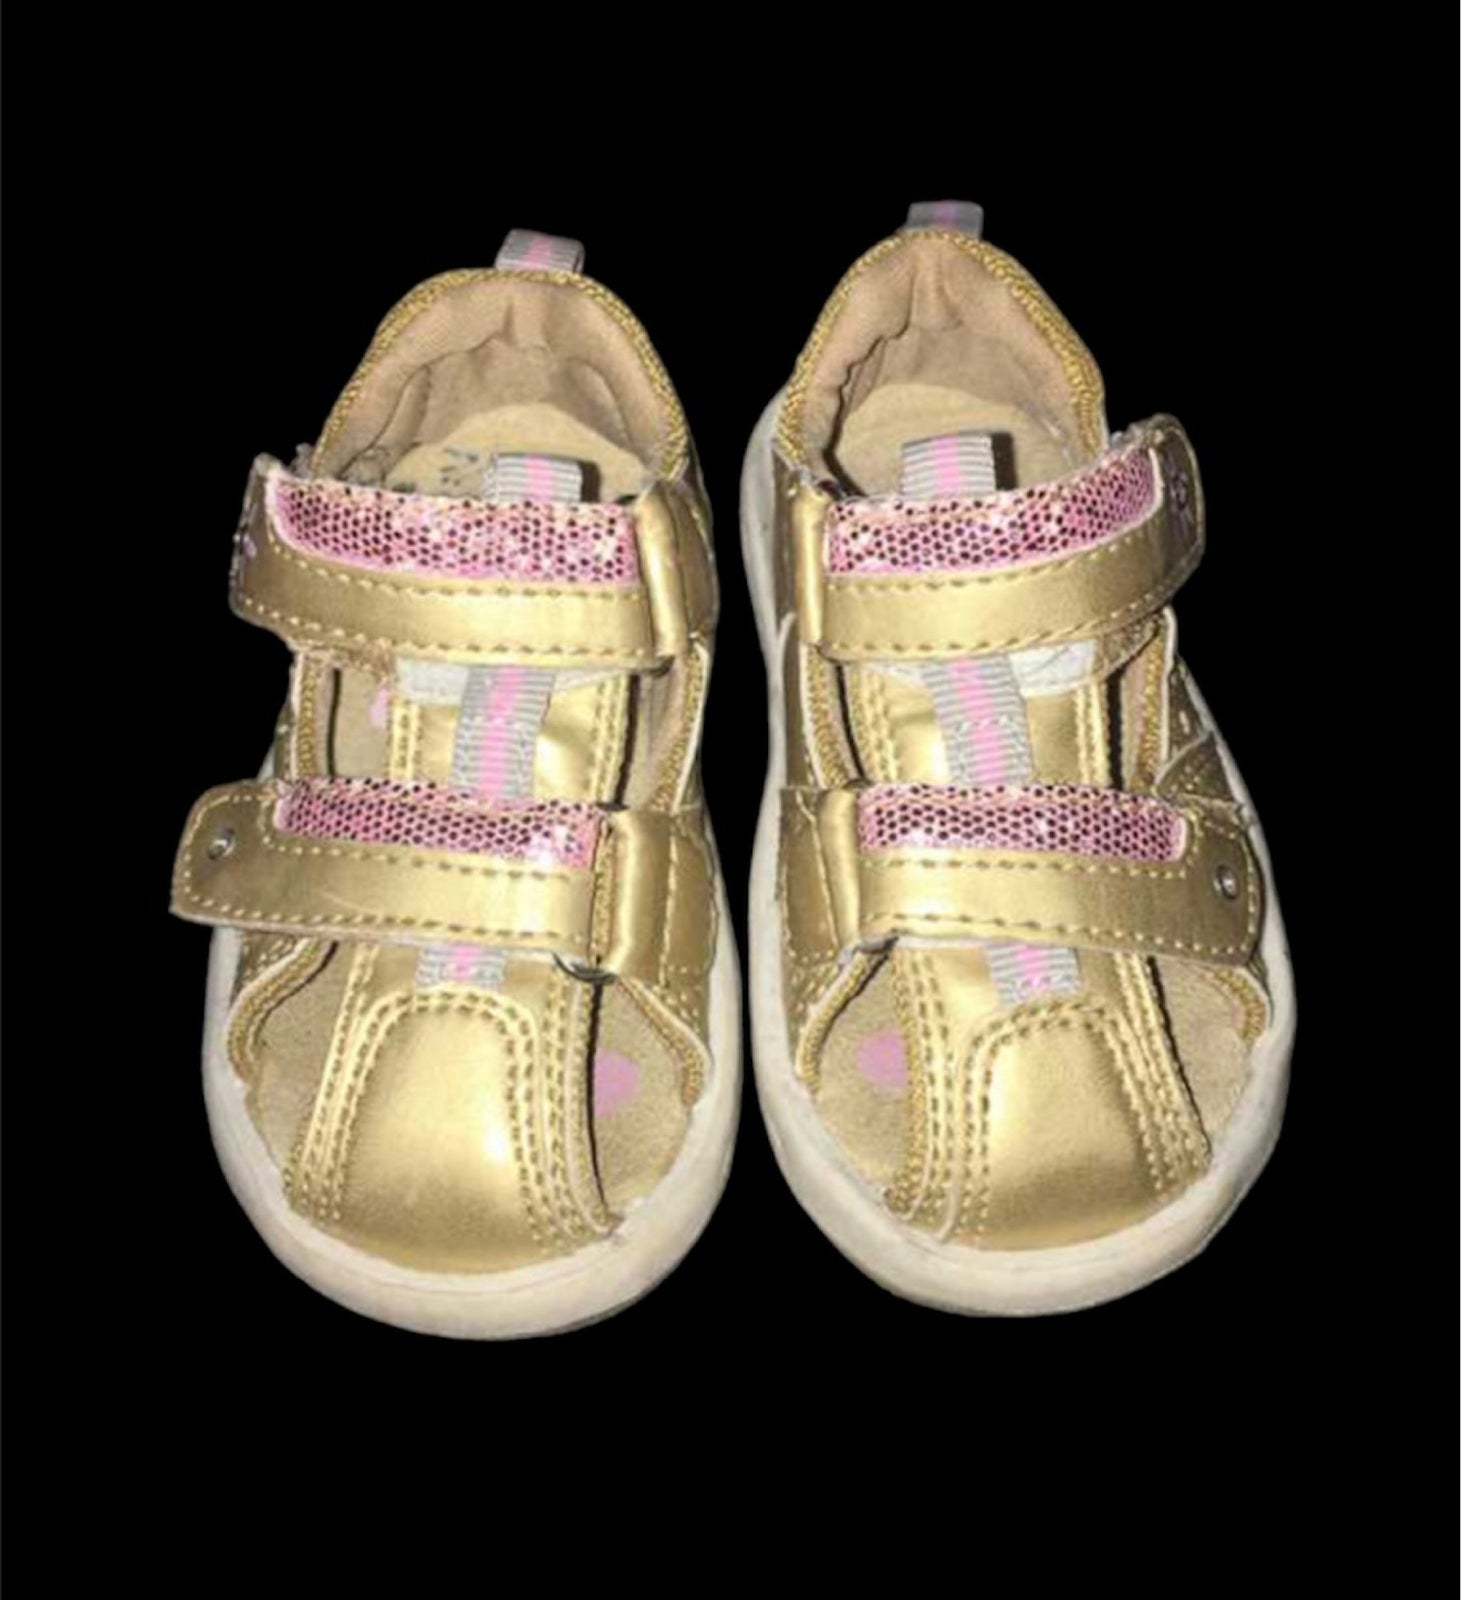 str. 21, 21 sandaler sko guld lyserøde glimmer – dba.dk Køb og Salg af Nyt og